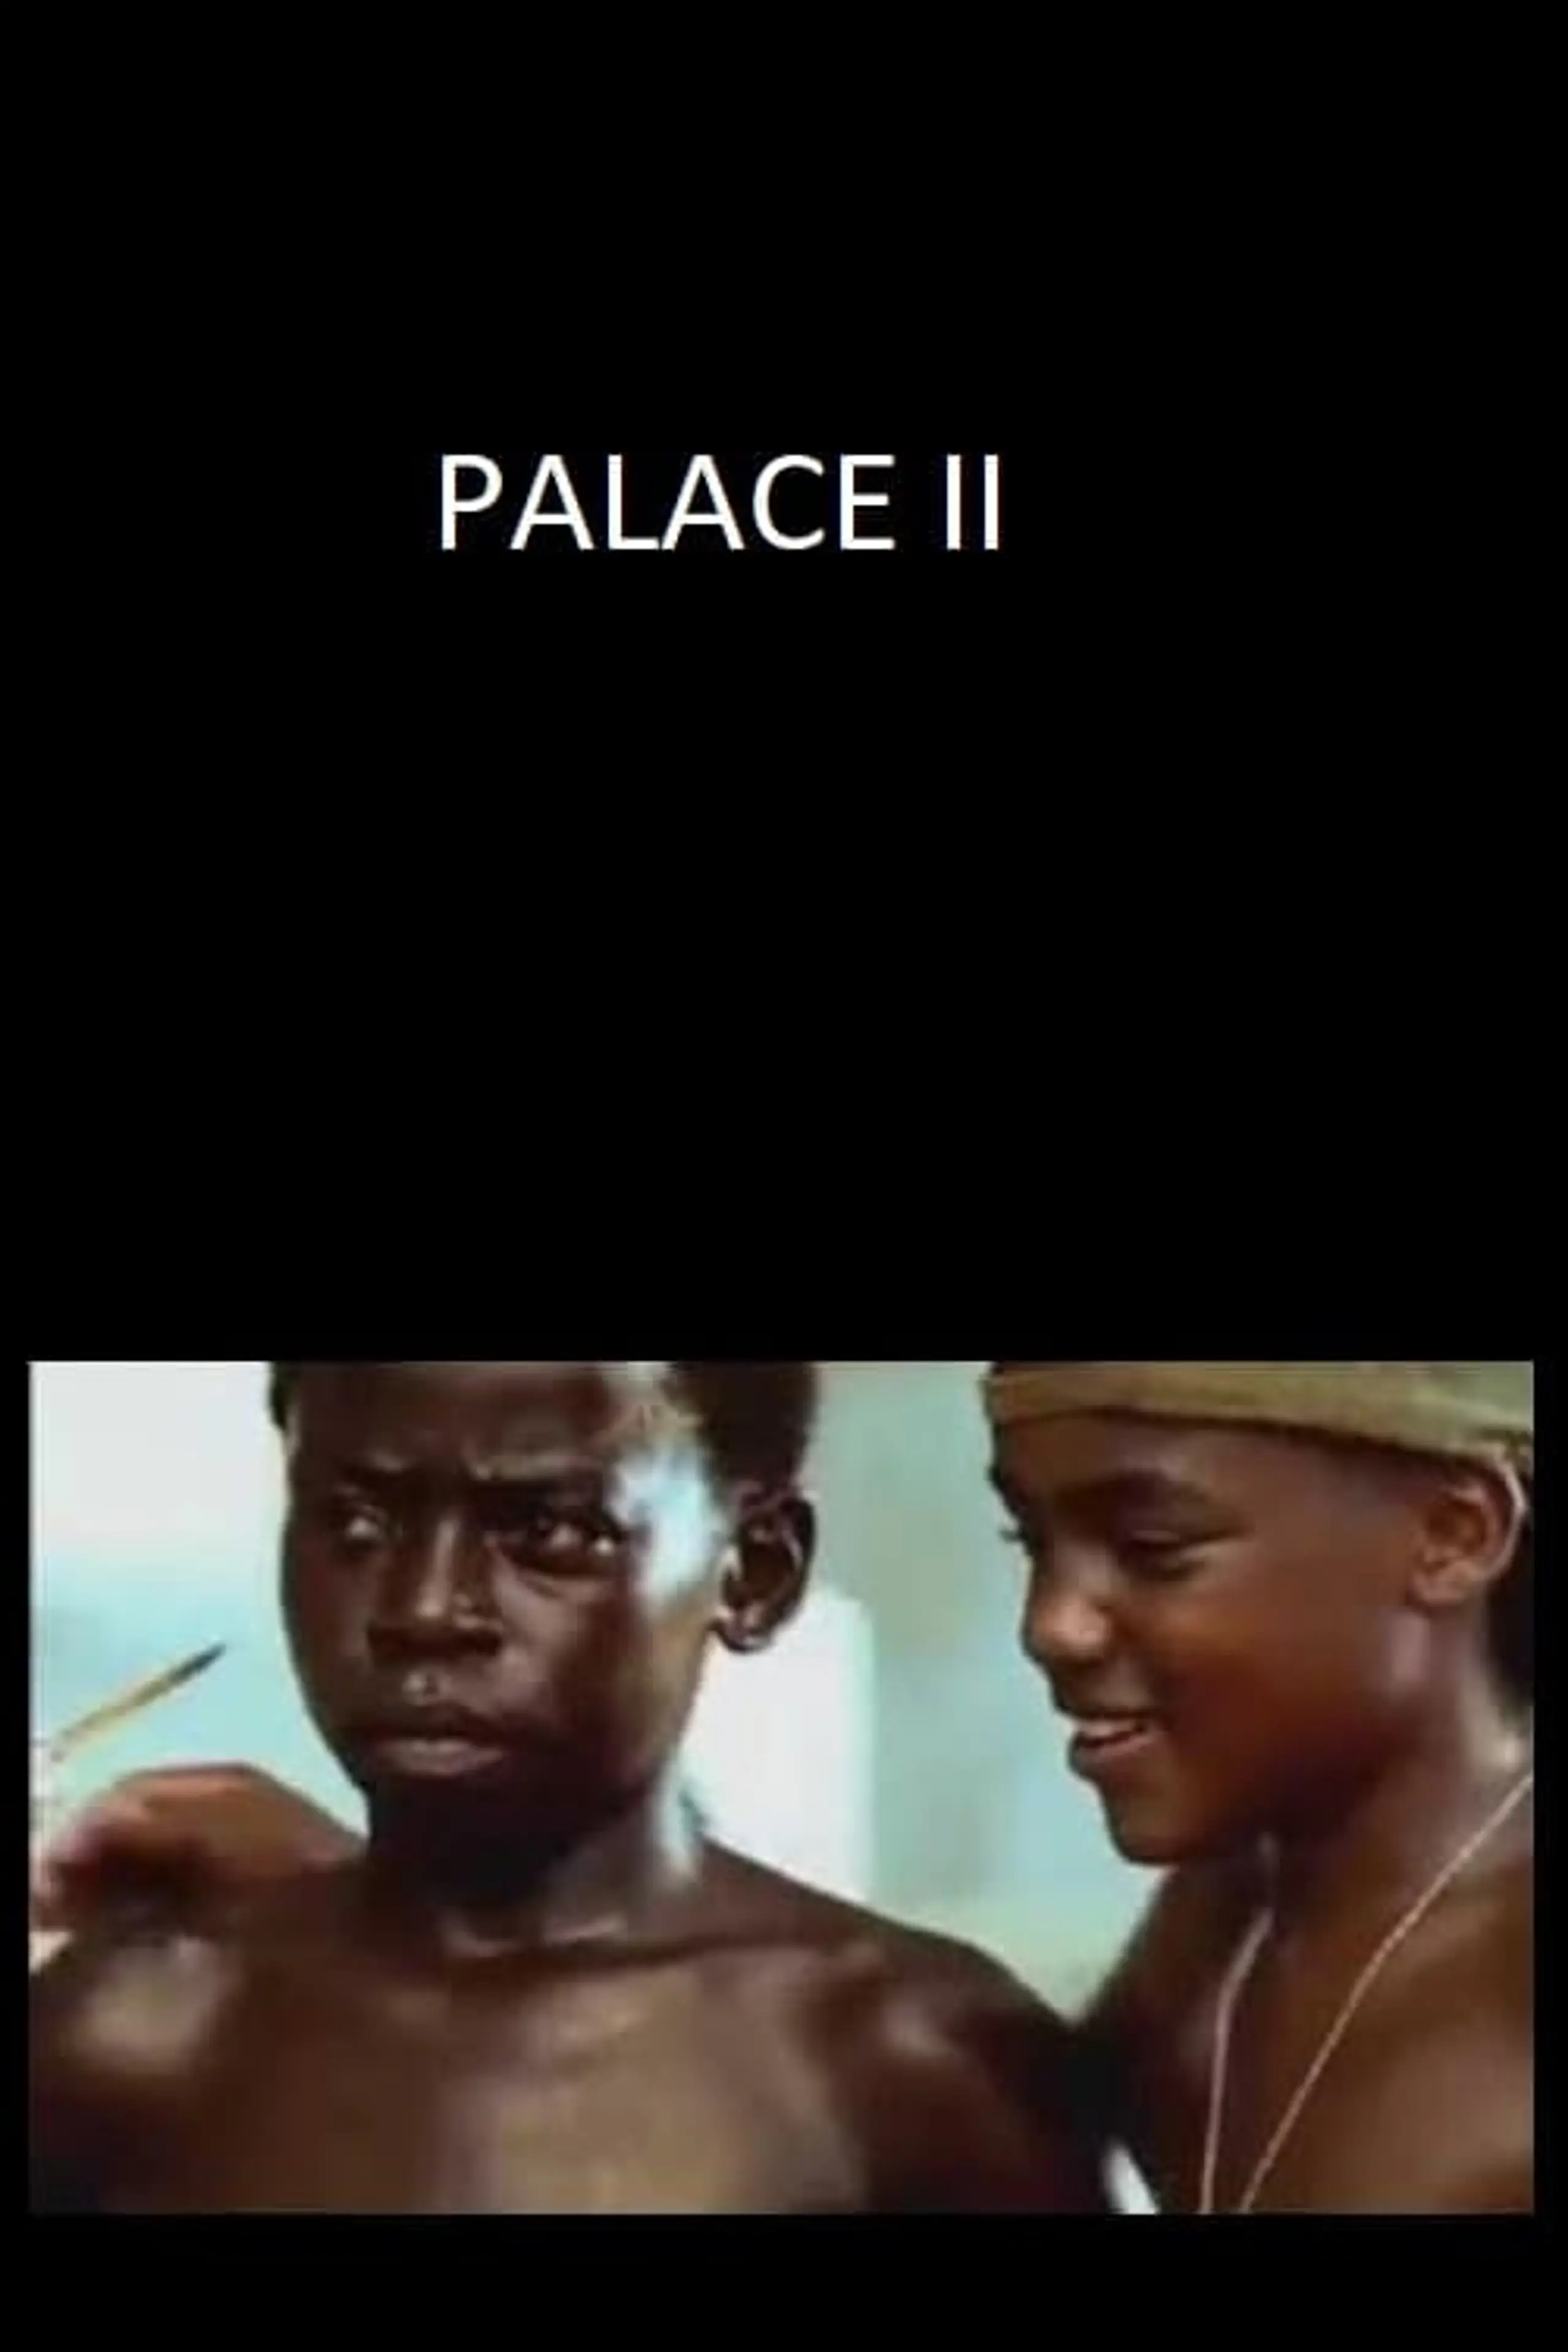 Palace II